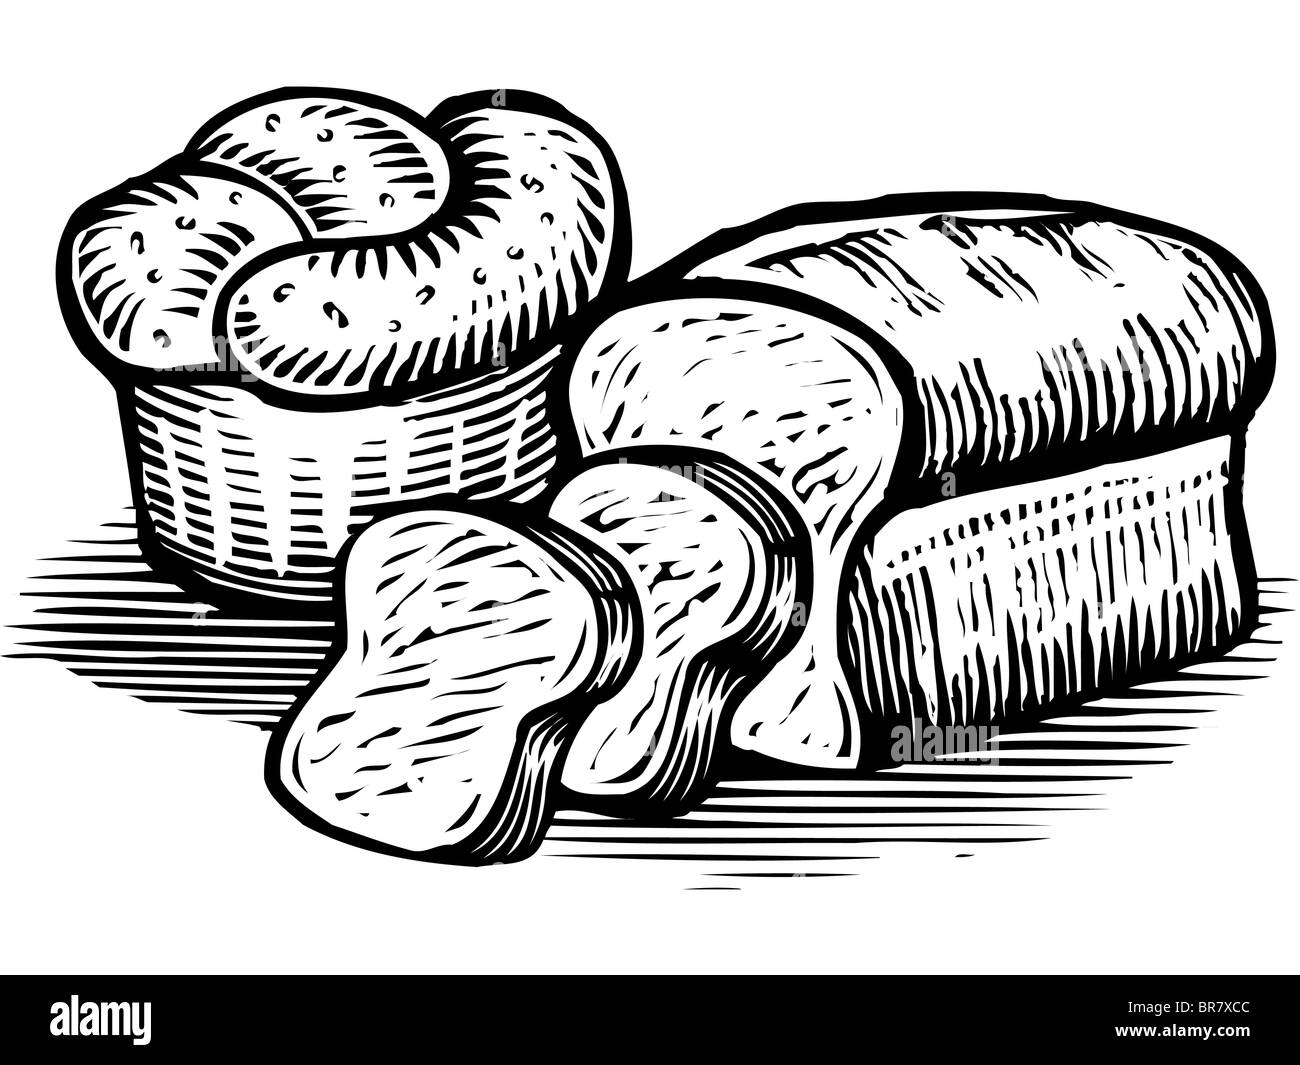 Un dessin de miches de pain illustrés en noir et blanc Banque D'Images